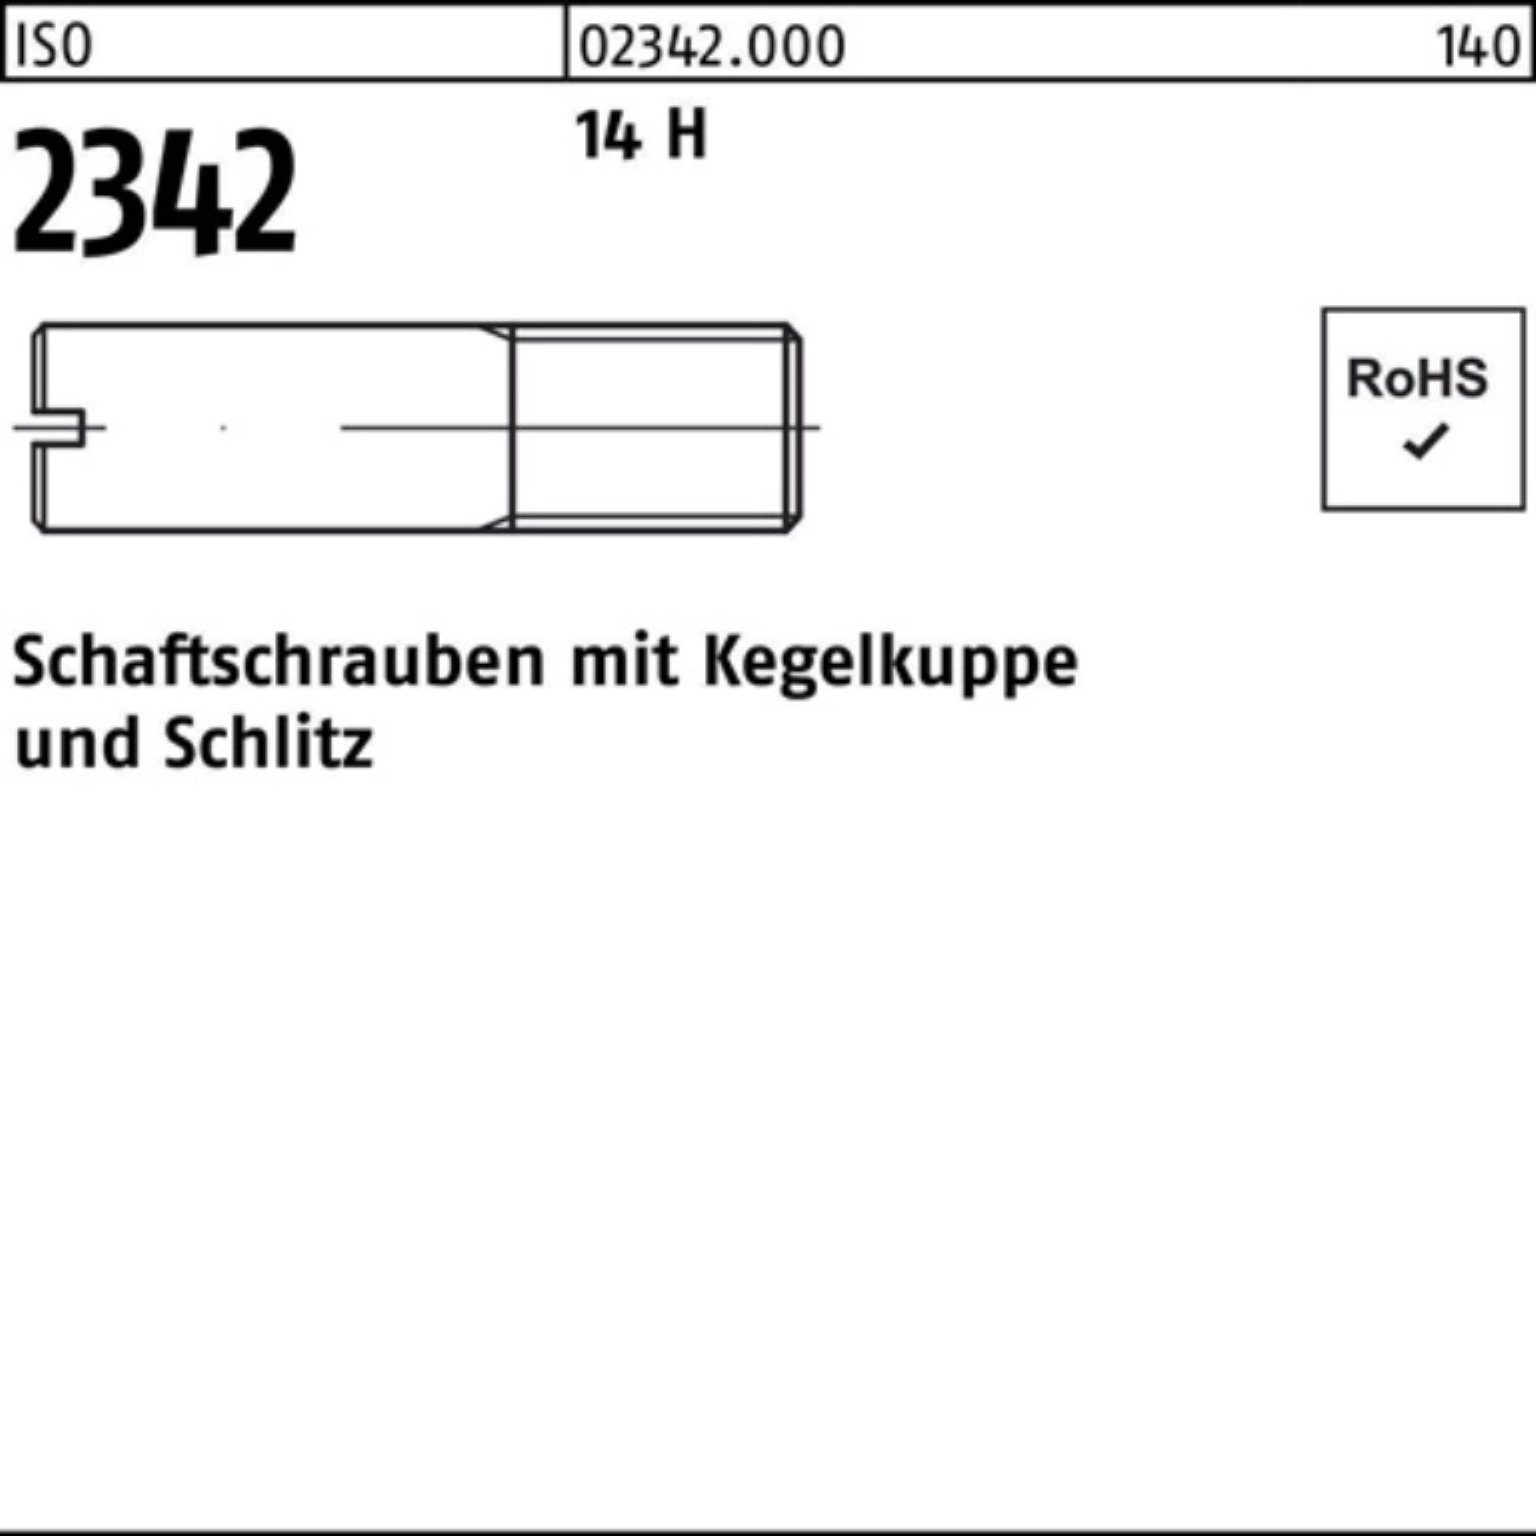 Reyher Schraube 100er ISO H 100 Kegelkuppe/Schlitz Schaftschraube 2342 Pack M6x 14 12